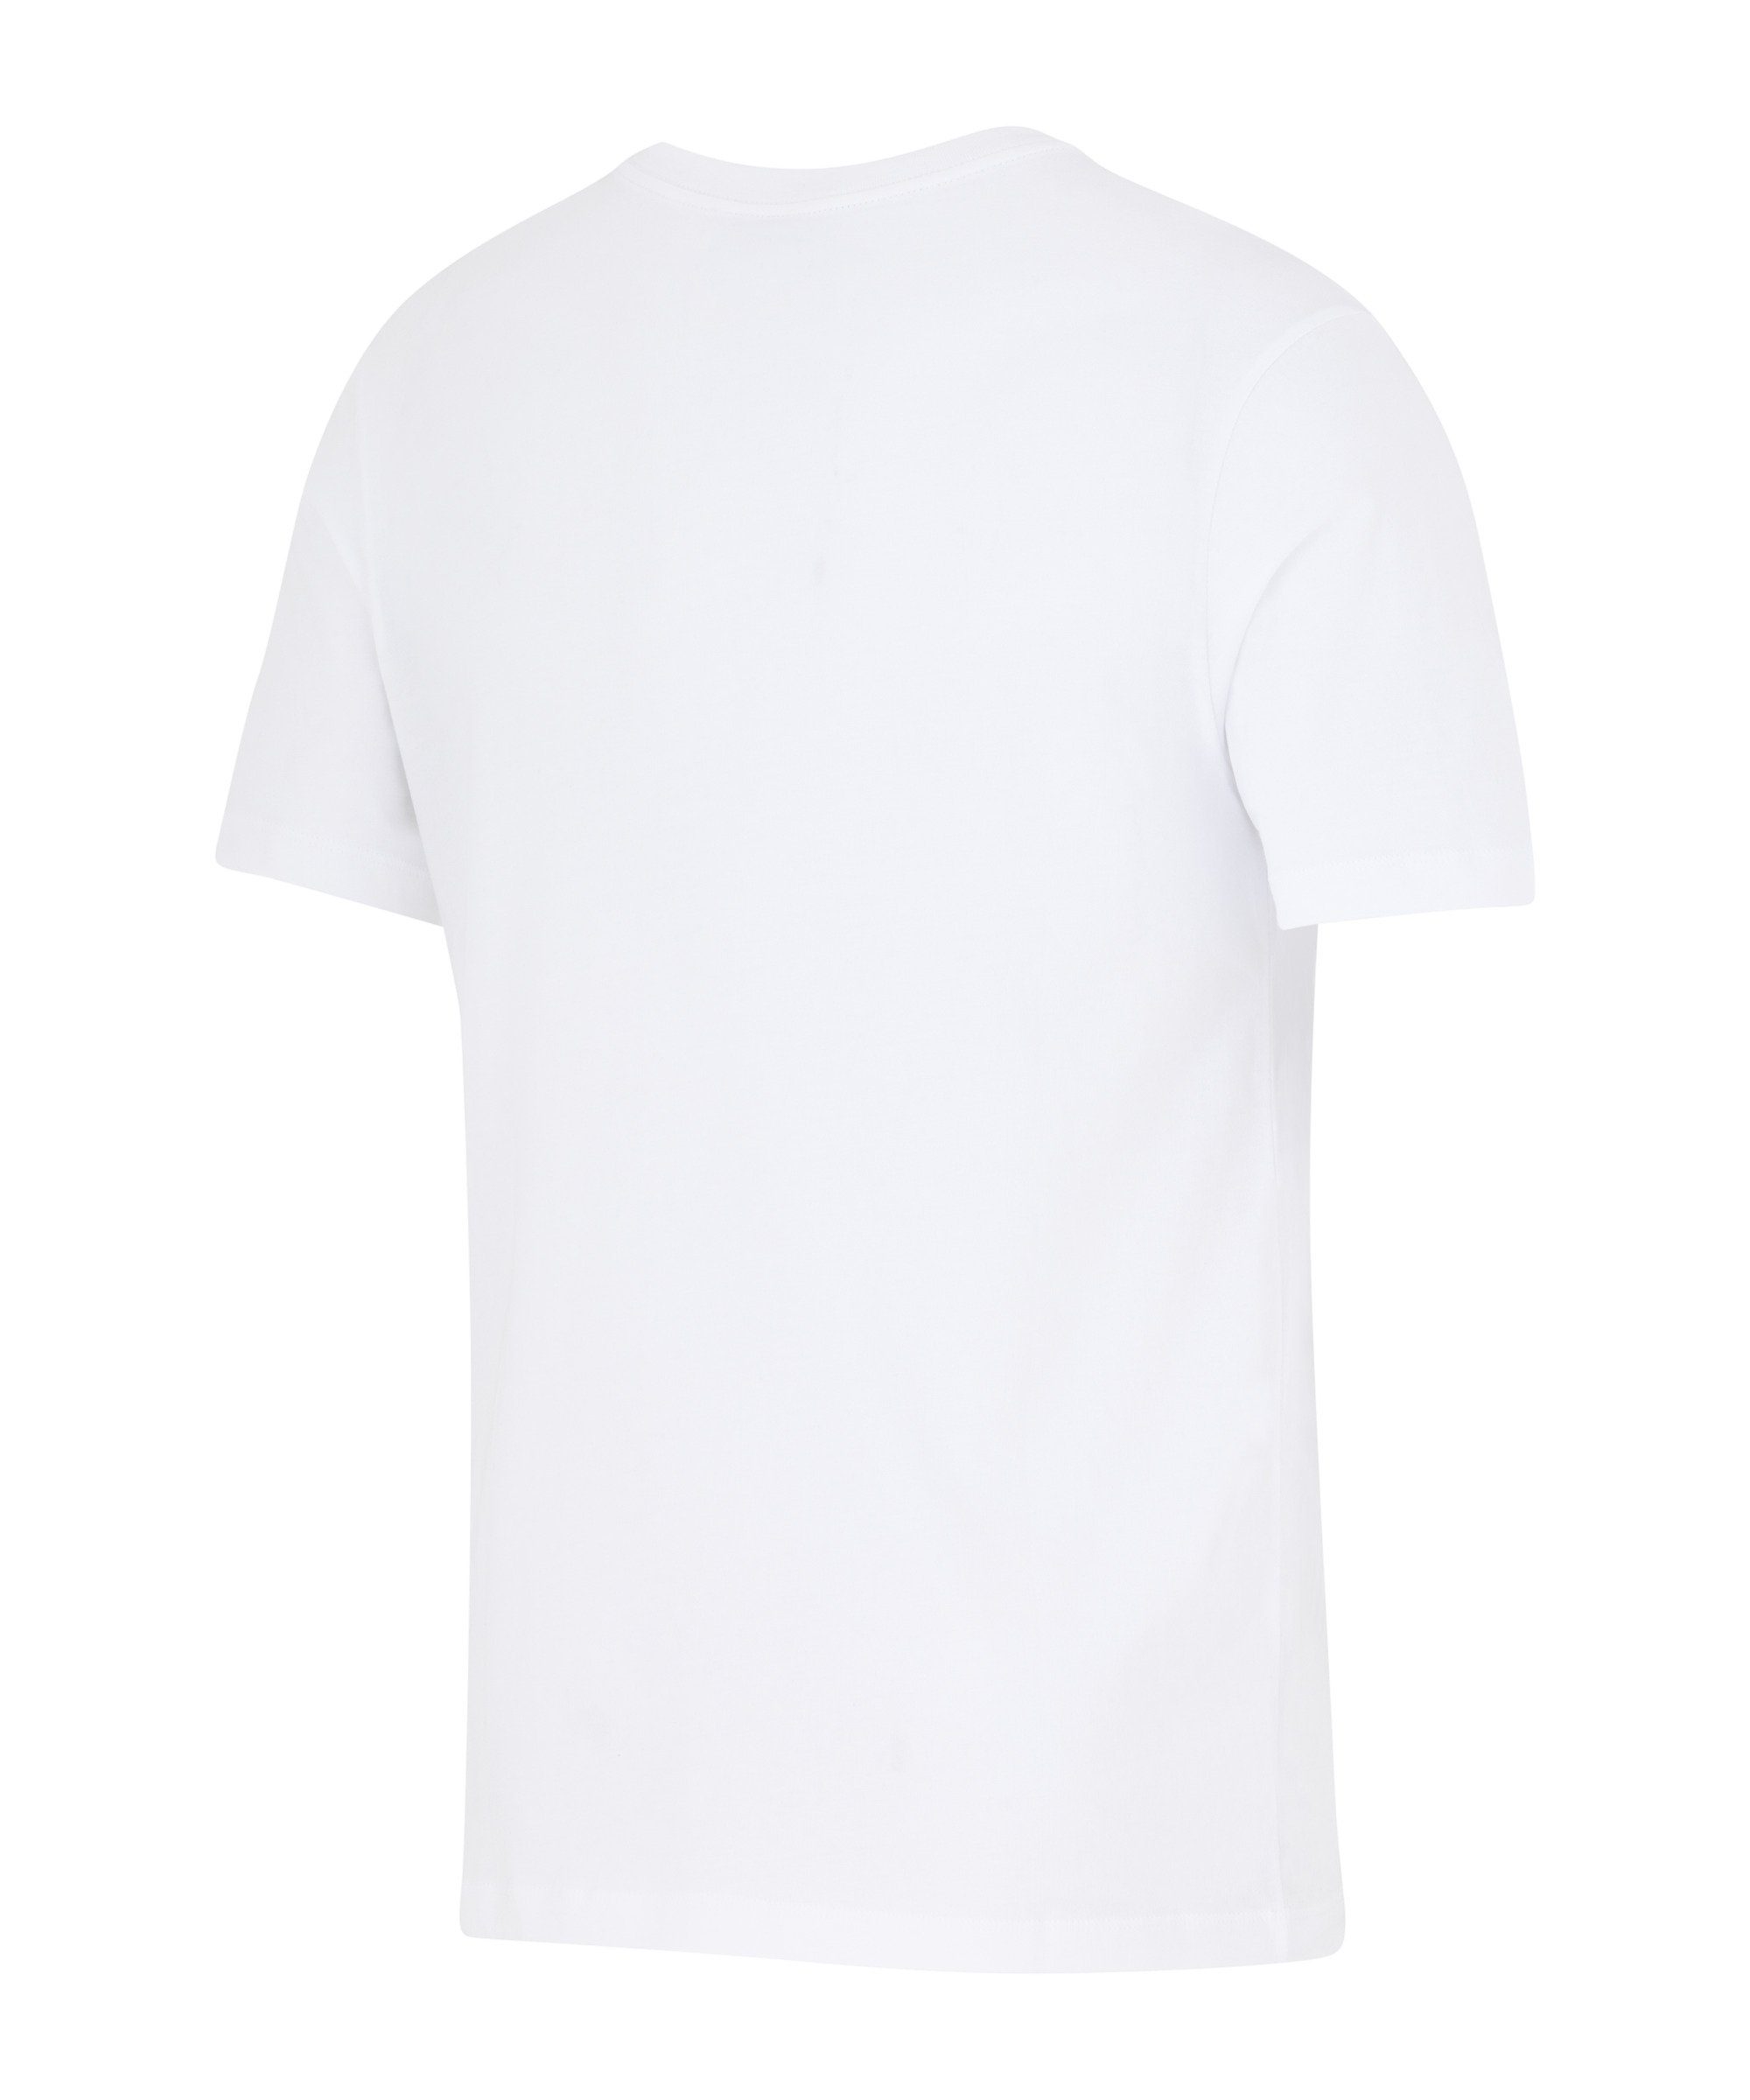 T-Shirt Nike Frankfurt default T-Shirt Eintracht weiss